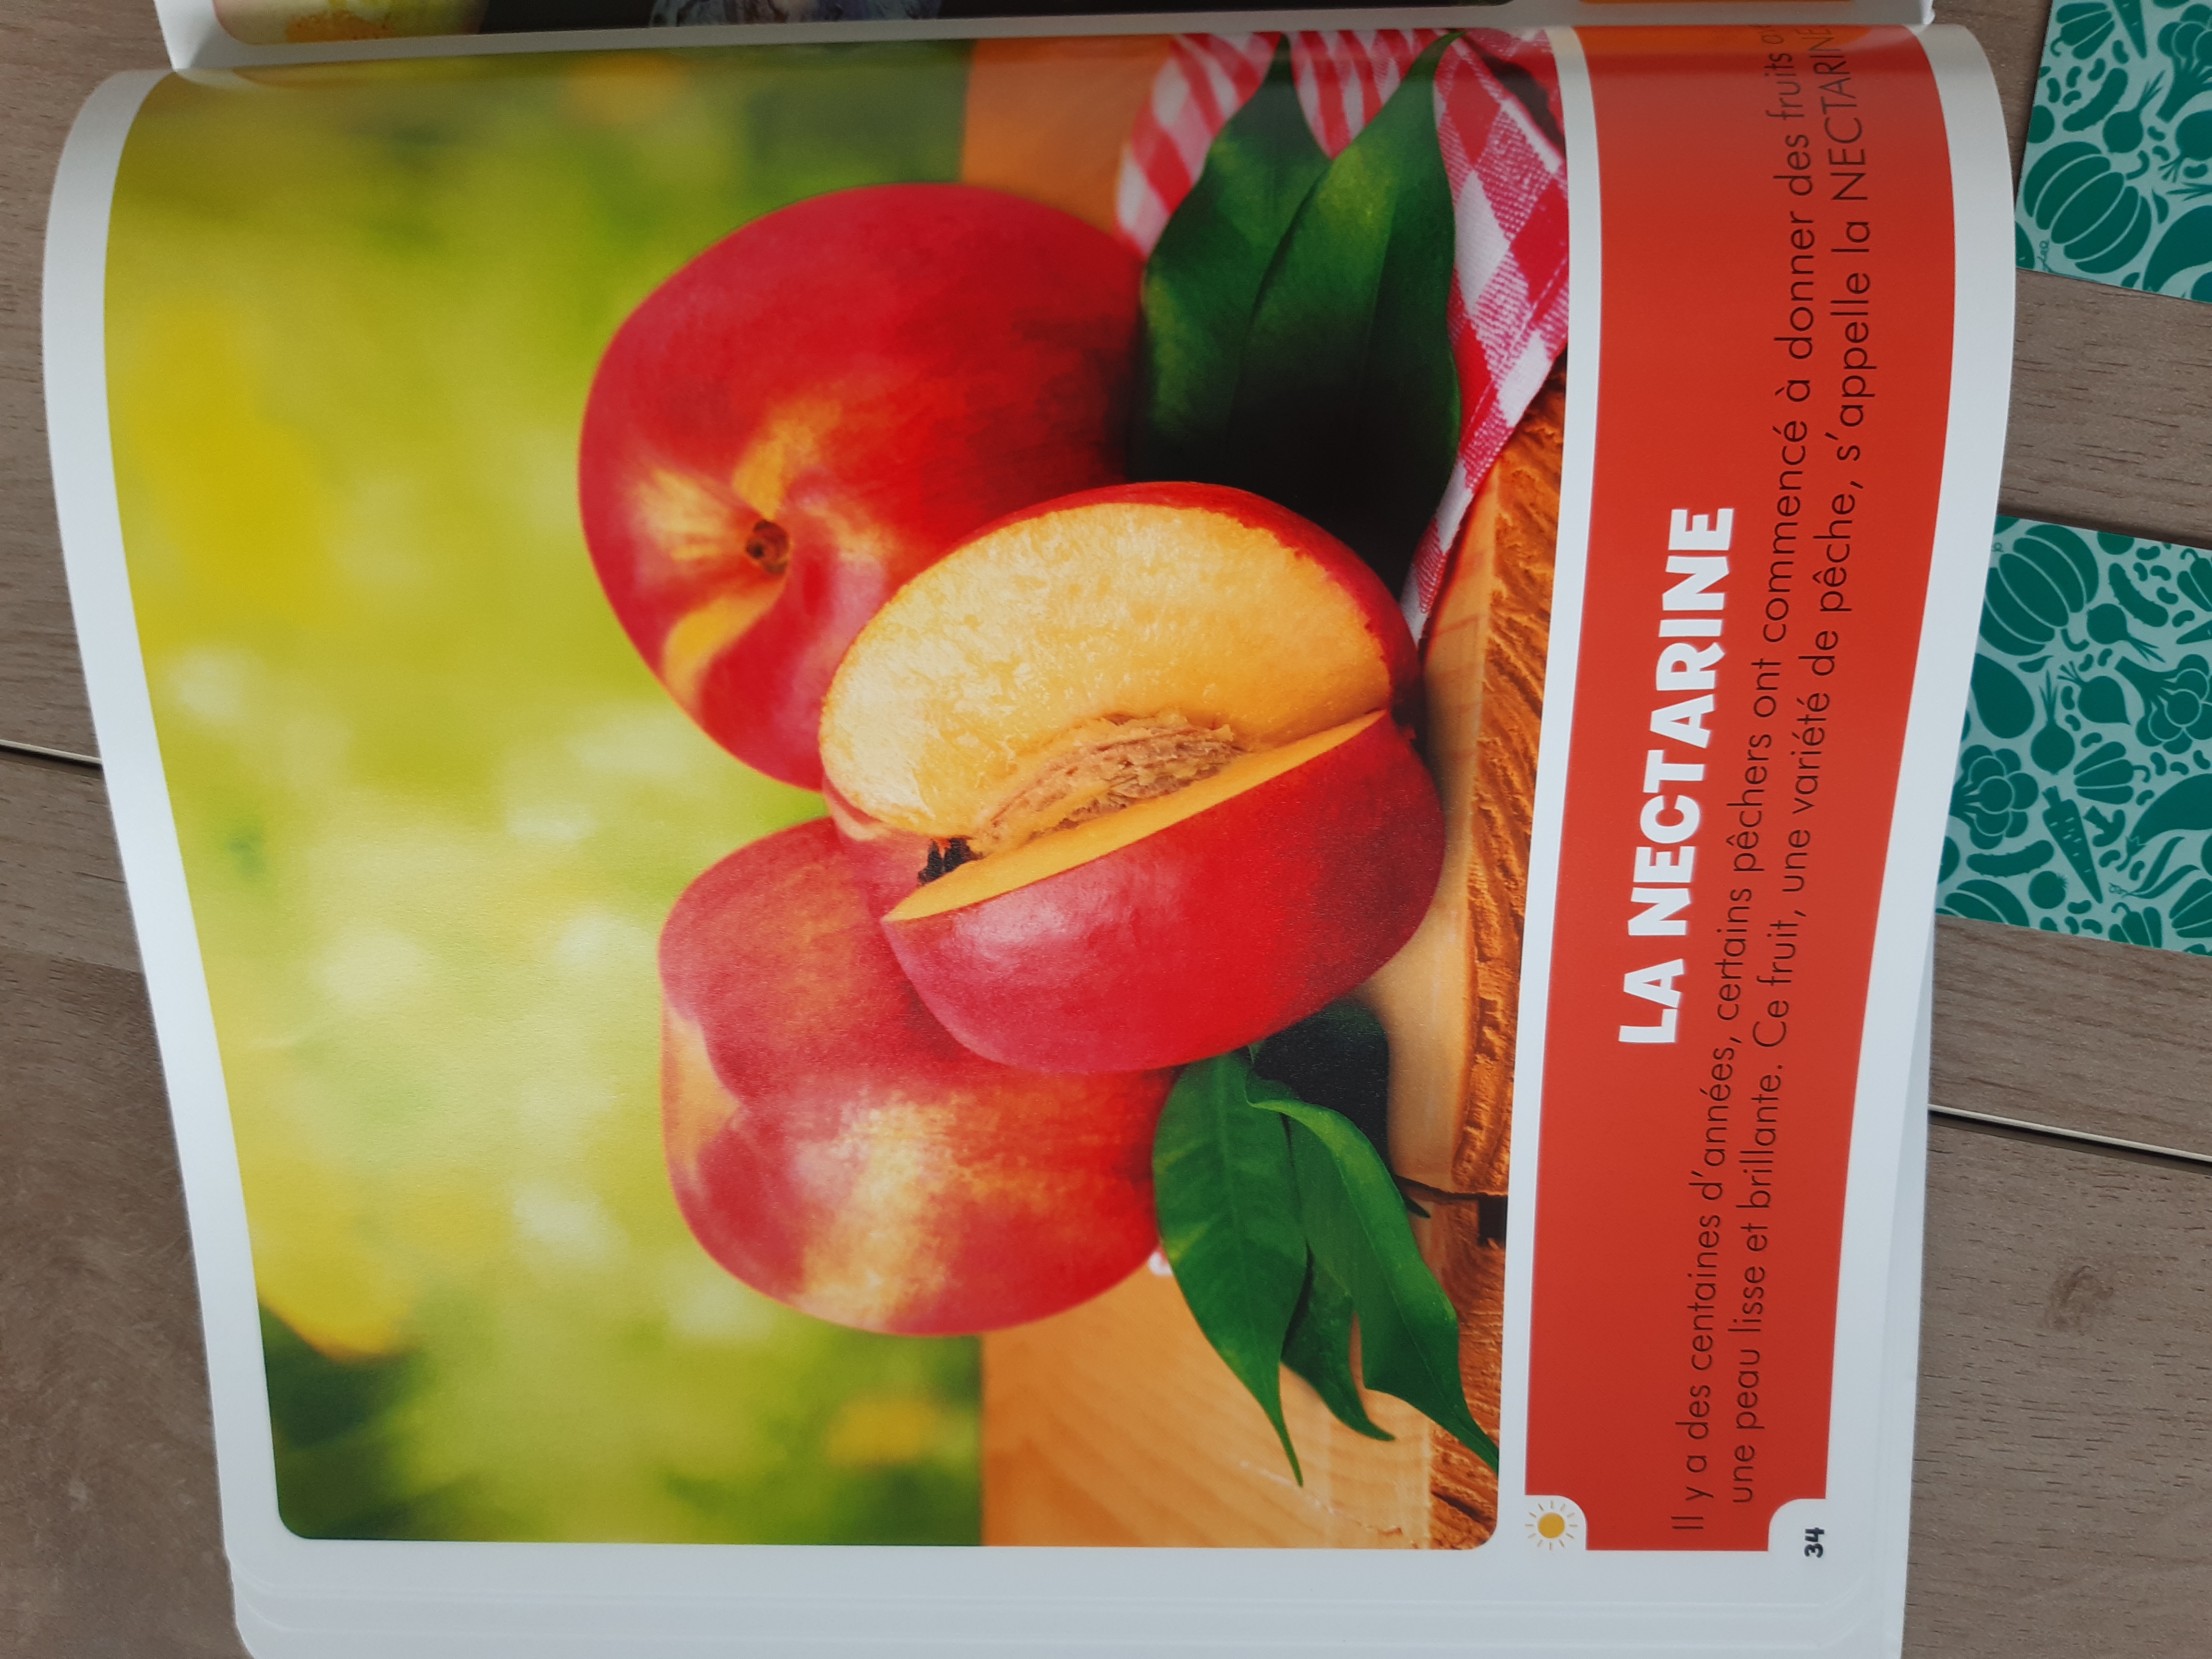 Pack Premier Imagier Les Fruits Et Les Legumes + Memory